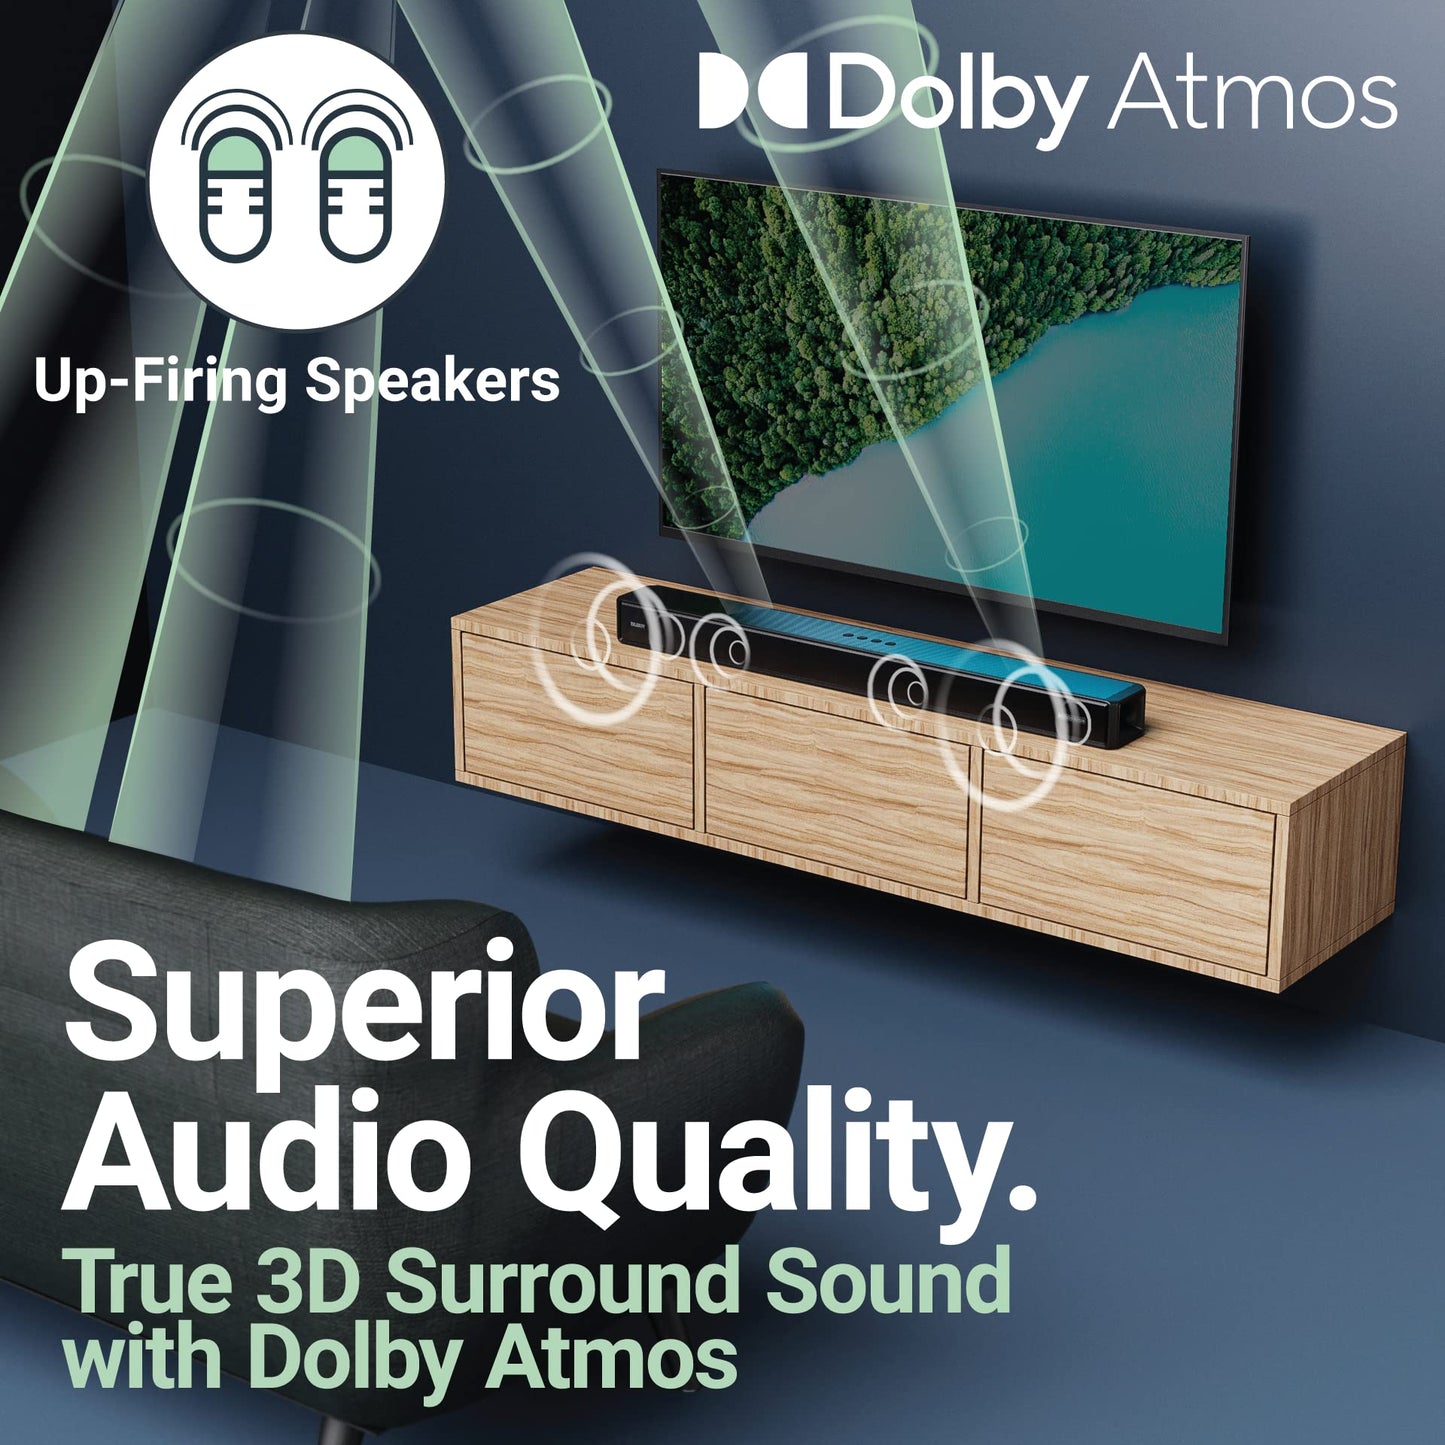 Majority Dolby Atmos Bluetooth Wireless Sound Bar 2.0.2